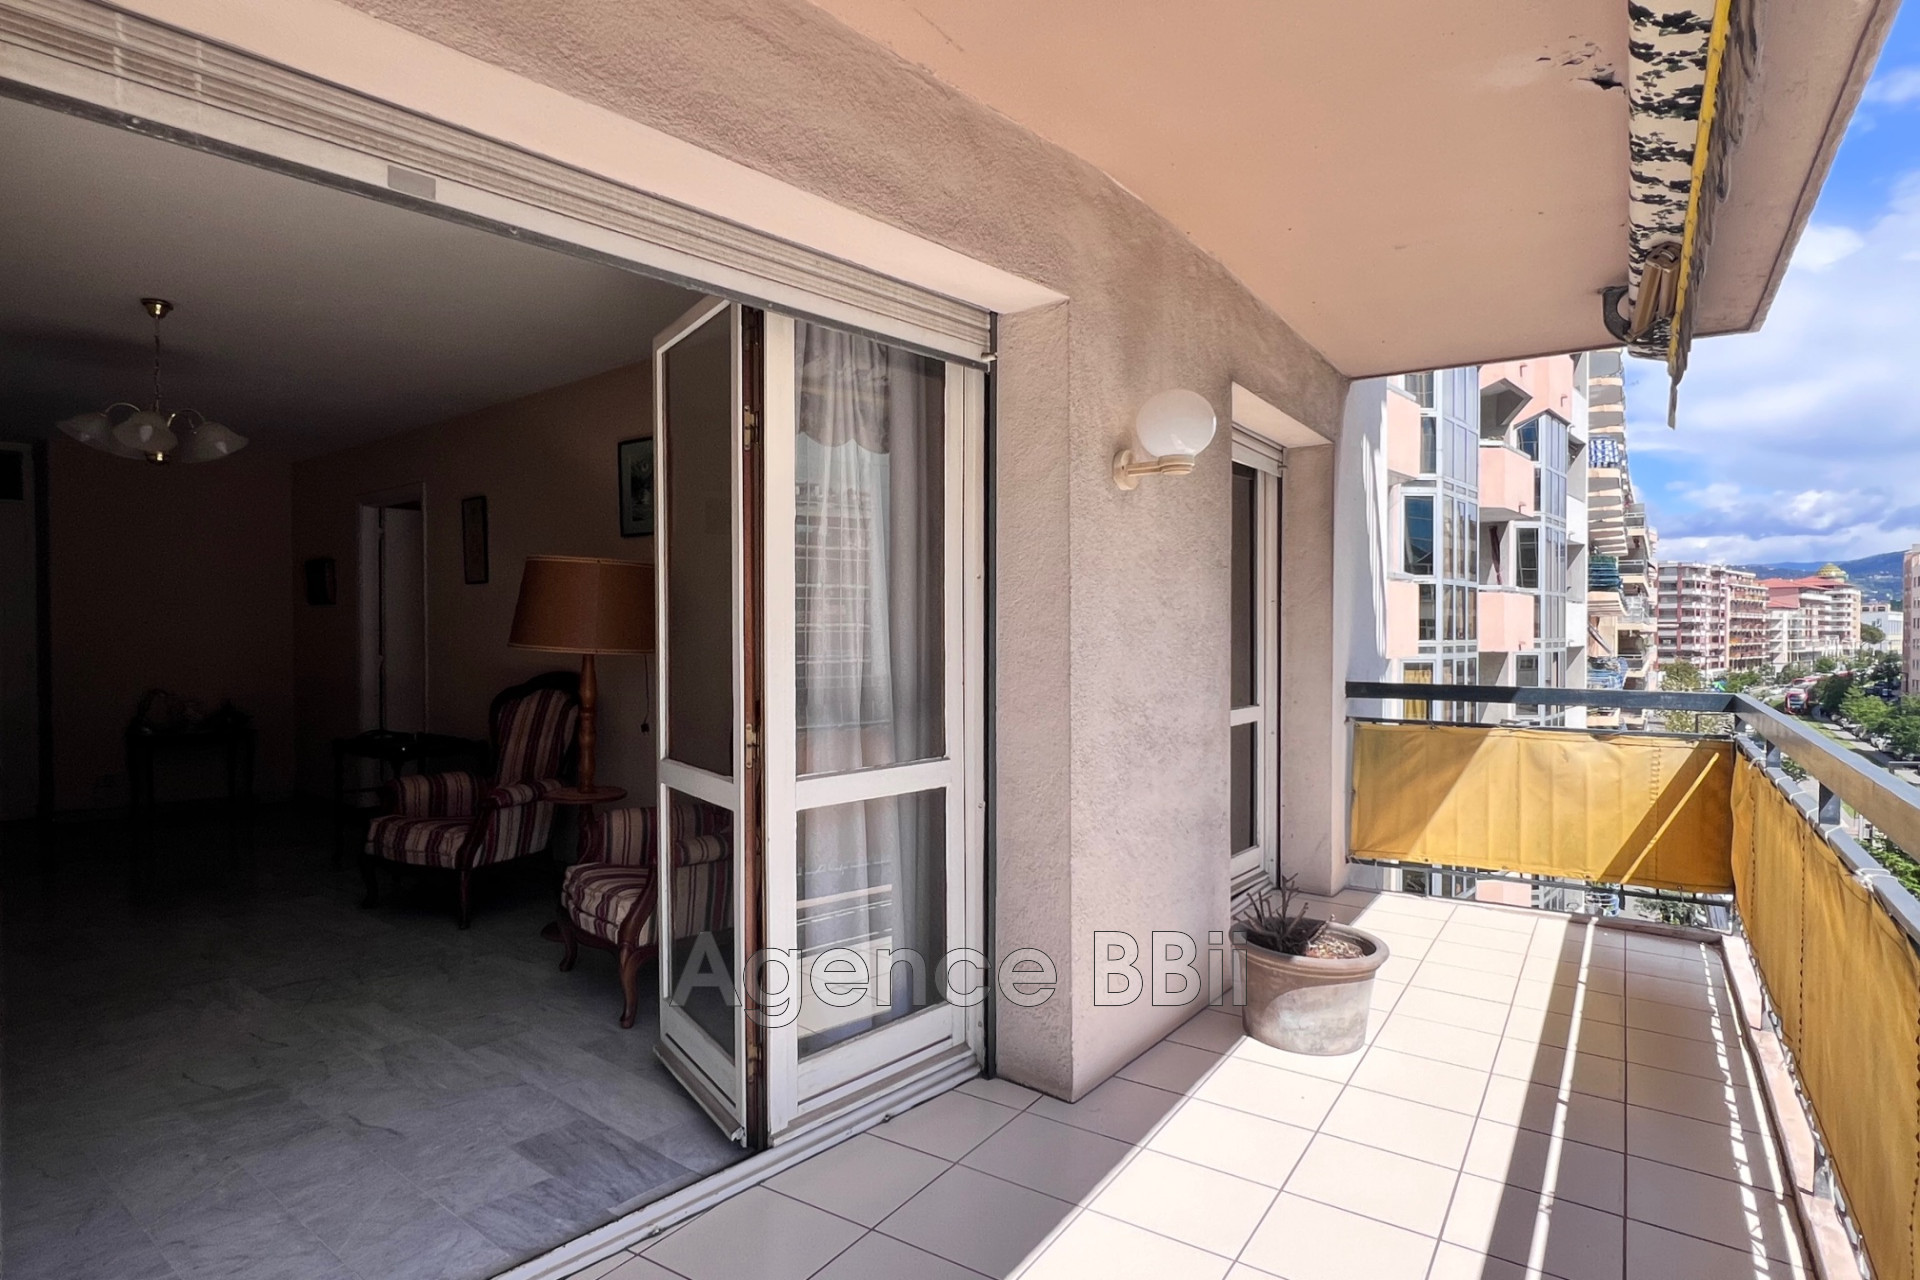 Vente Appartement 86m² 4 Pièces à Nice (06000) - BBII